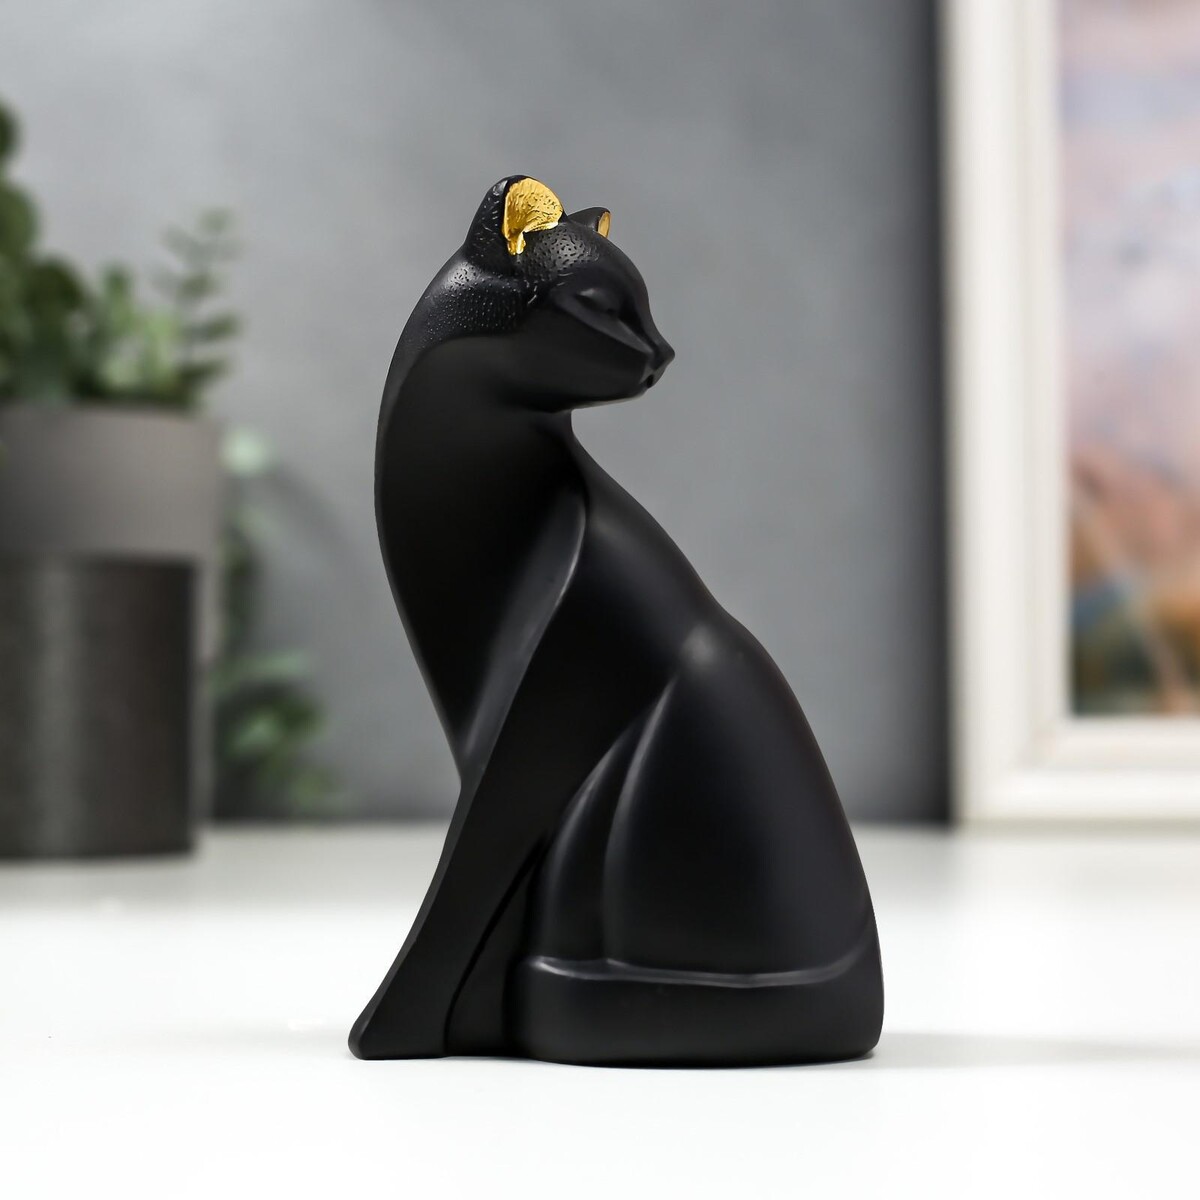 Сувенир полистоун сувенир акм кружка cats love spb петропавловка мосты фарфор матовая черная 350мл подарочная коробка